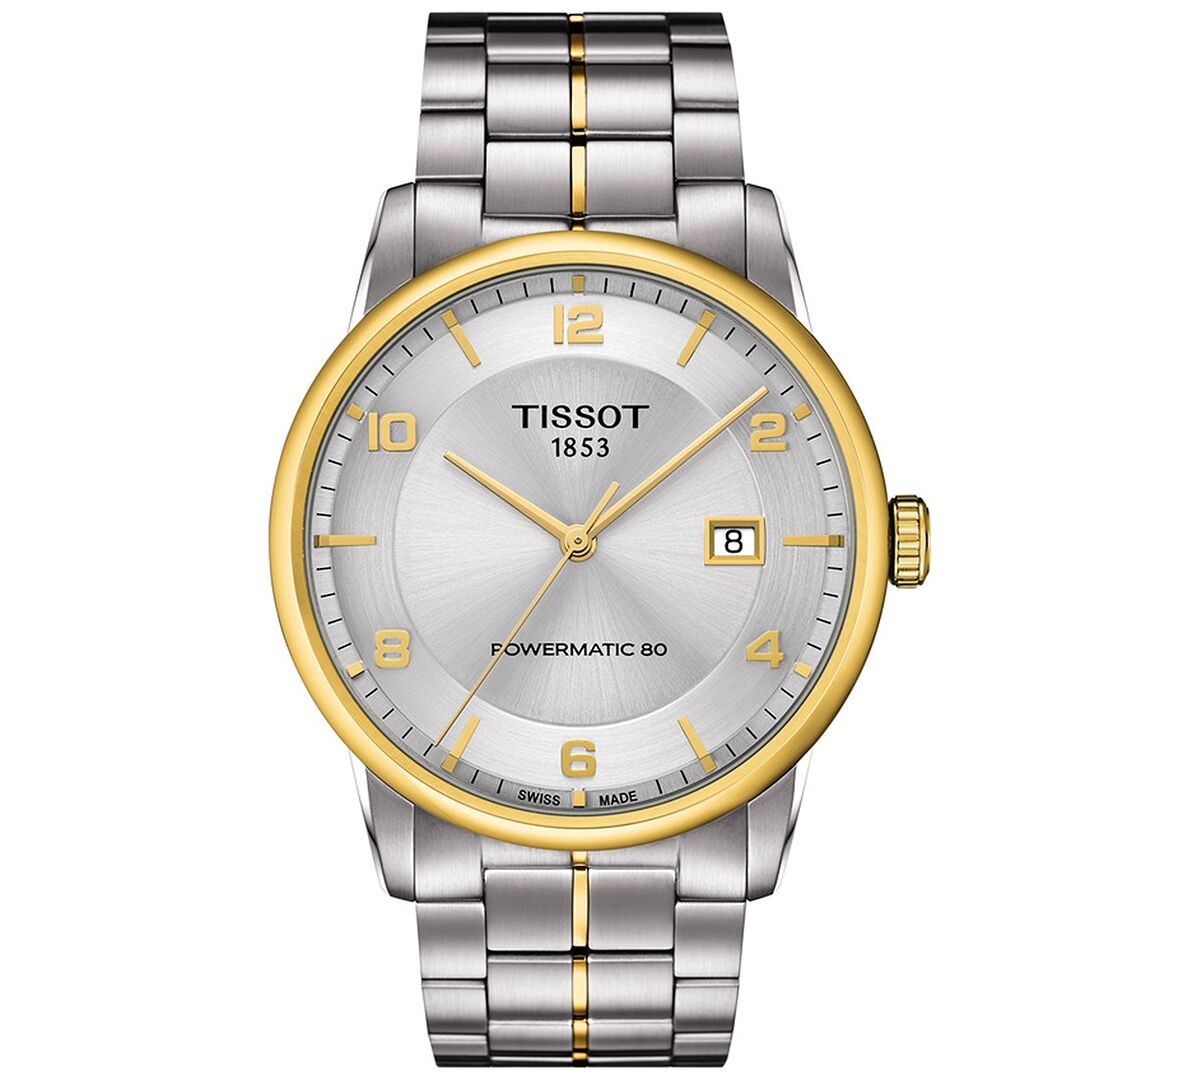 Tissot Men's Swiss Automatic Luxury Powermatic 80 Two-Tone Stainless Steel Bracelet Watch 41mm - Silver